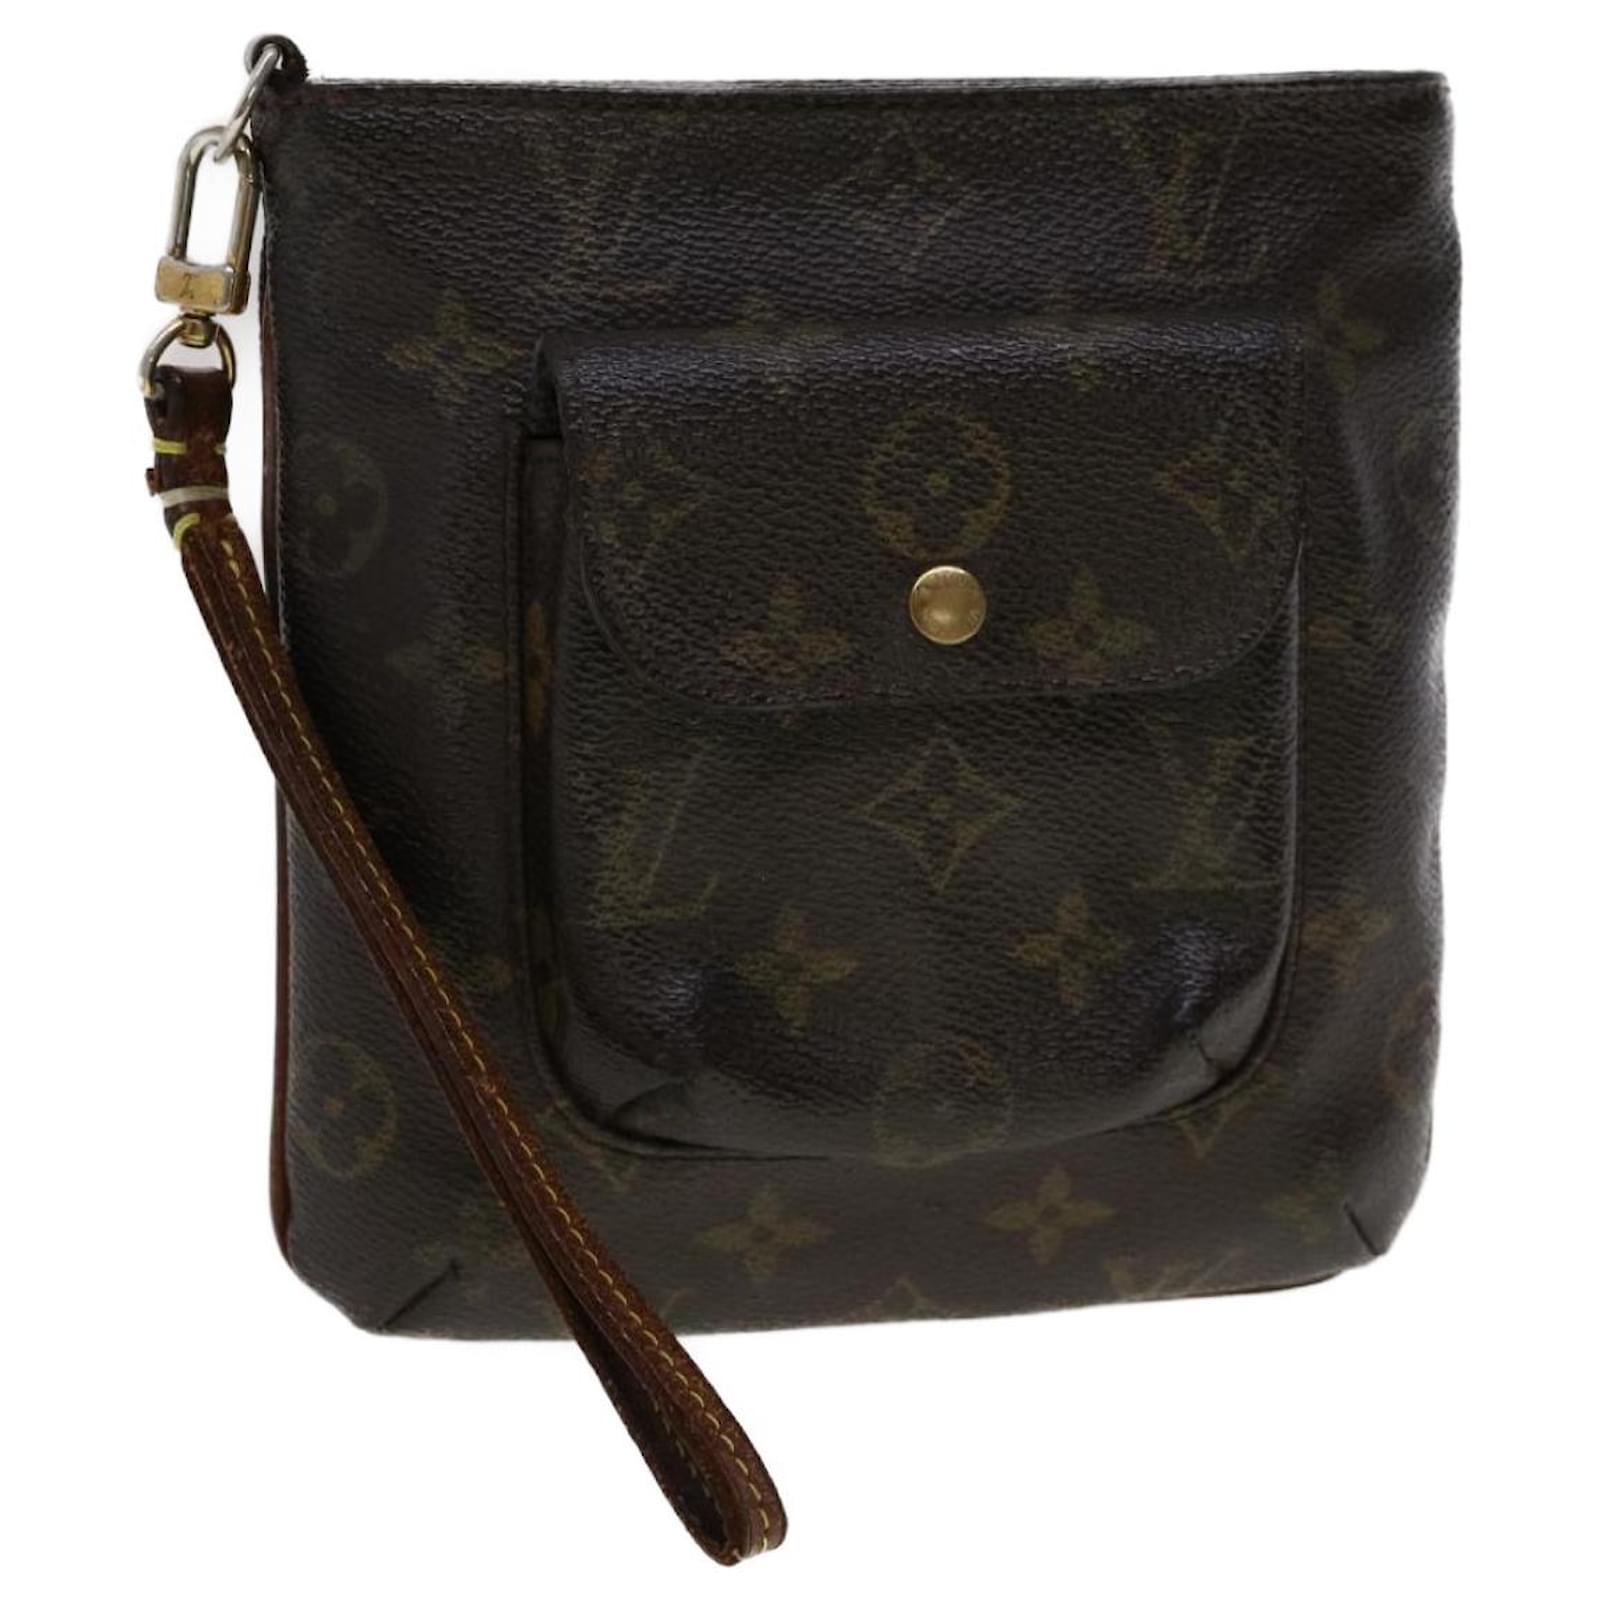 Louis Vuitton Partition Wristlet - Brown Clutches, Handbags